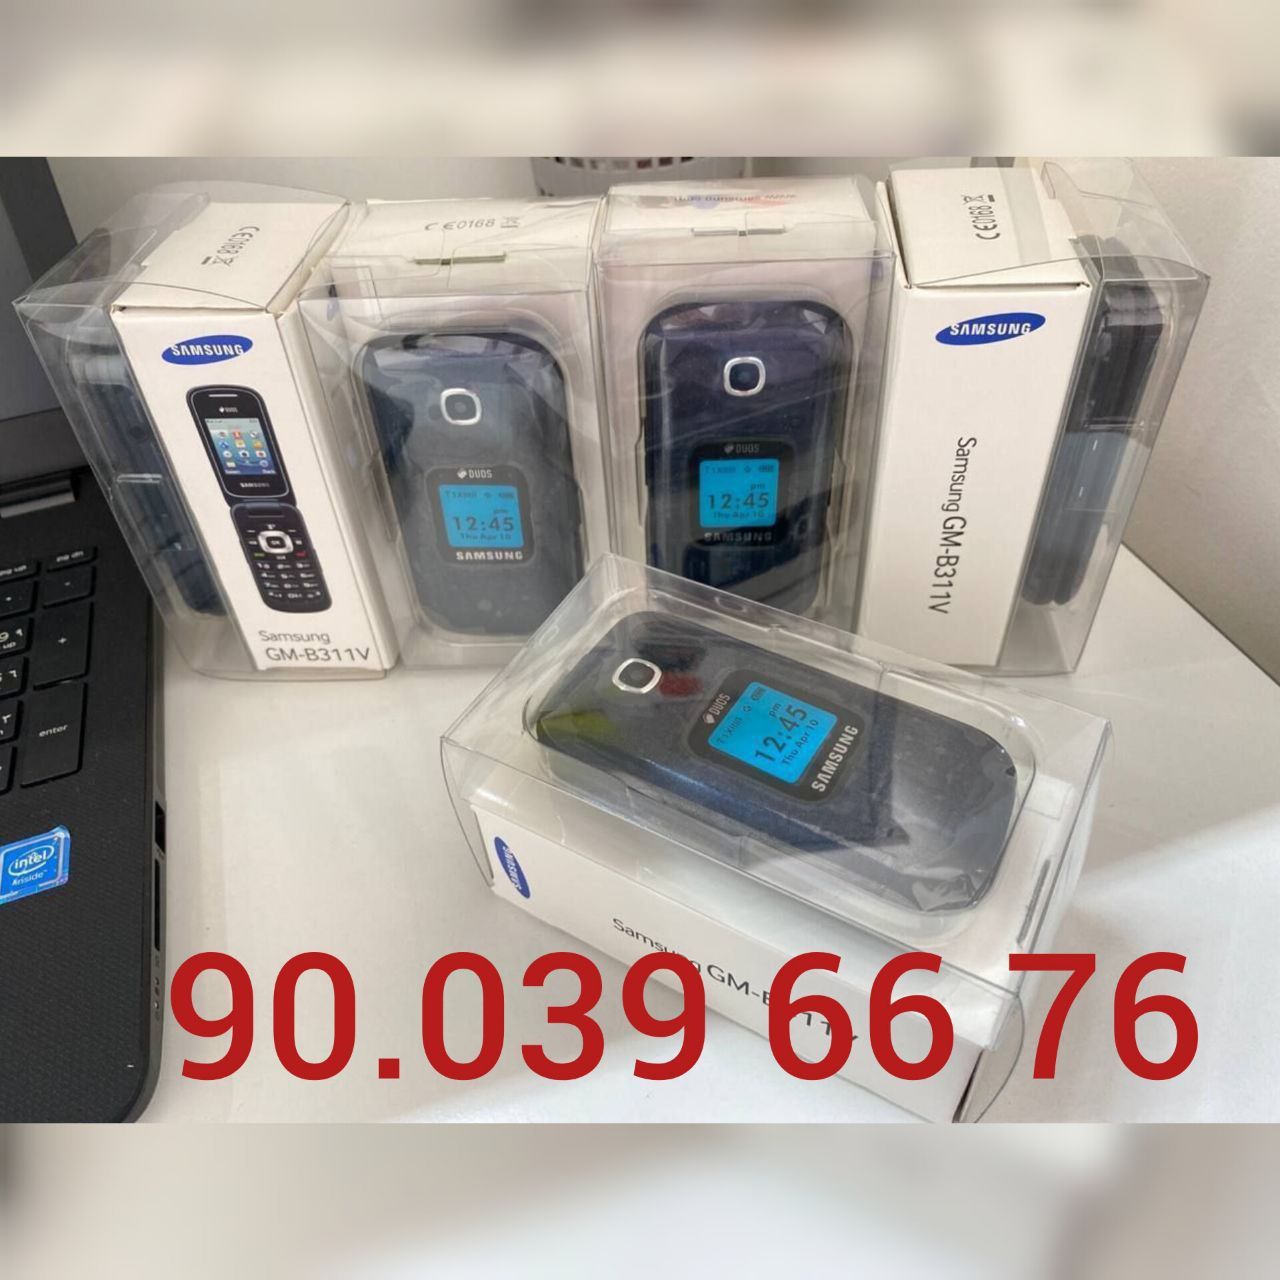 Gusto 3 (B311V) Samsung, Nokia 2720 flip, Nokia 2660 flip, GSM,Новый.